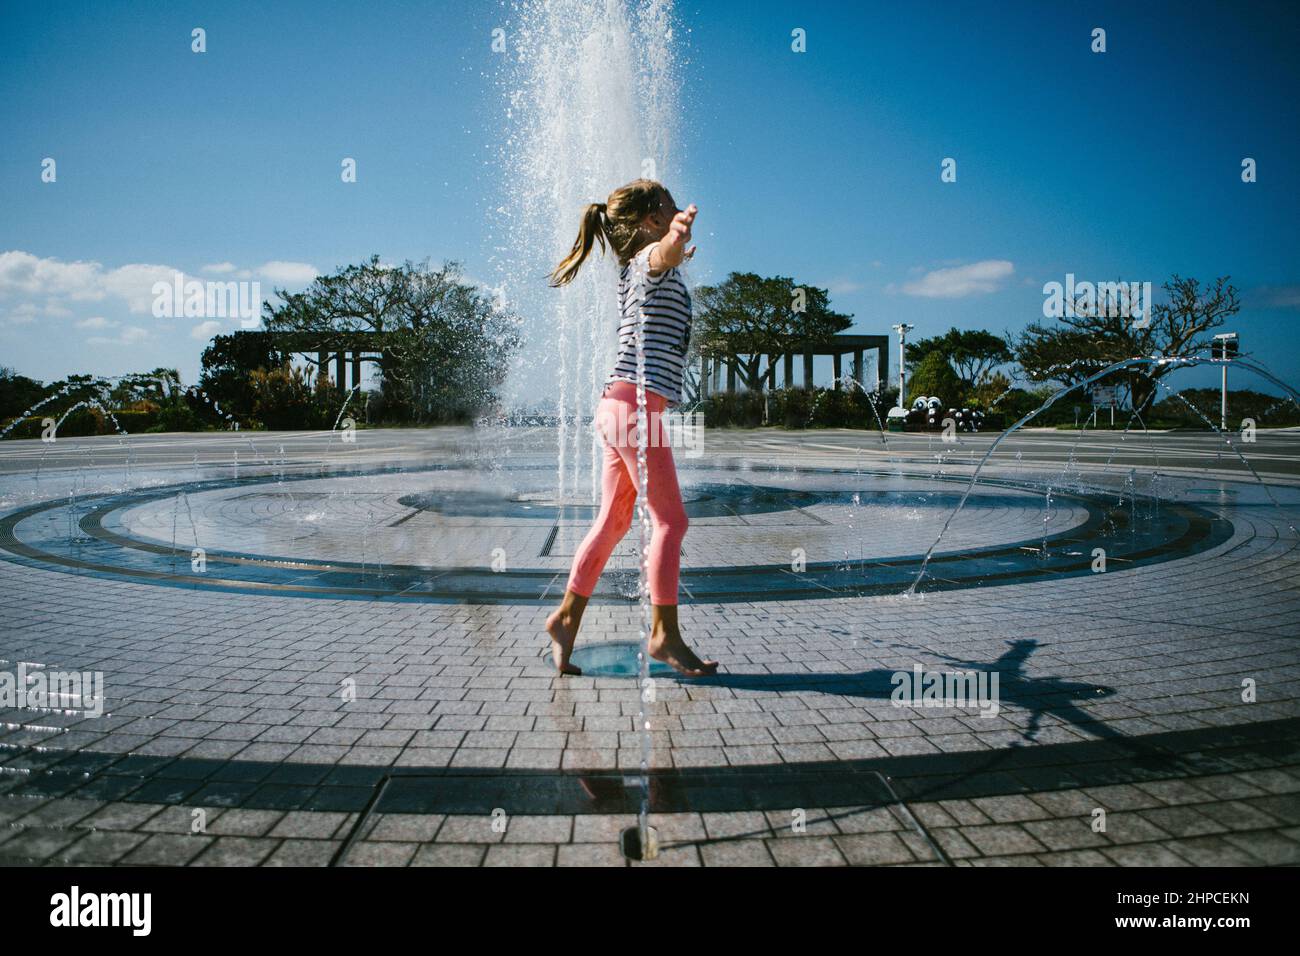 Une fille joue dans une fontaine d'eau le jour chaud de l'été Banque D'Images